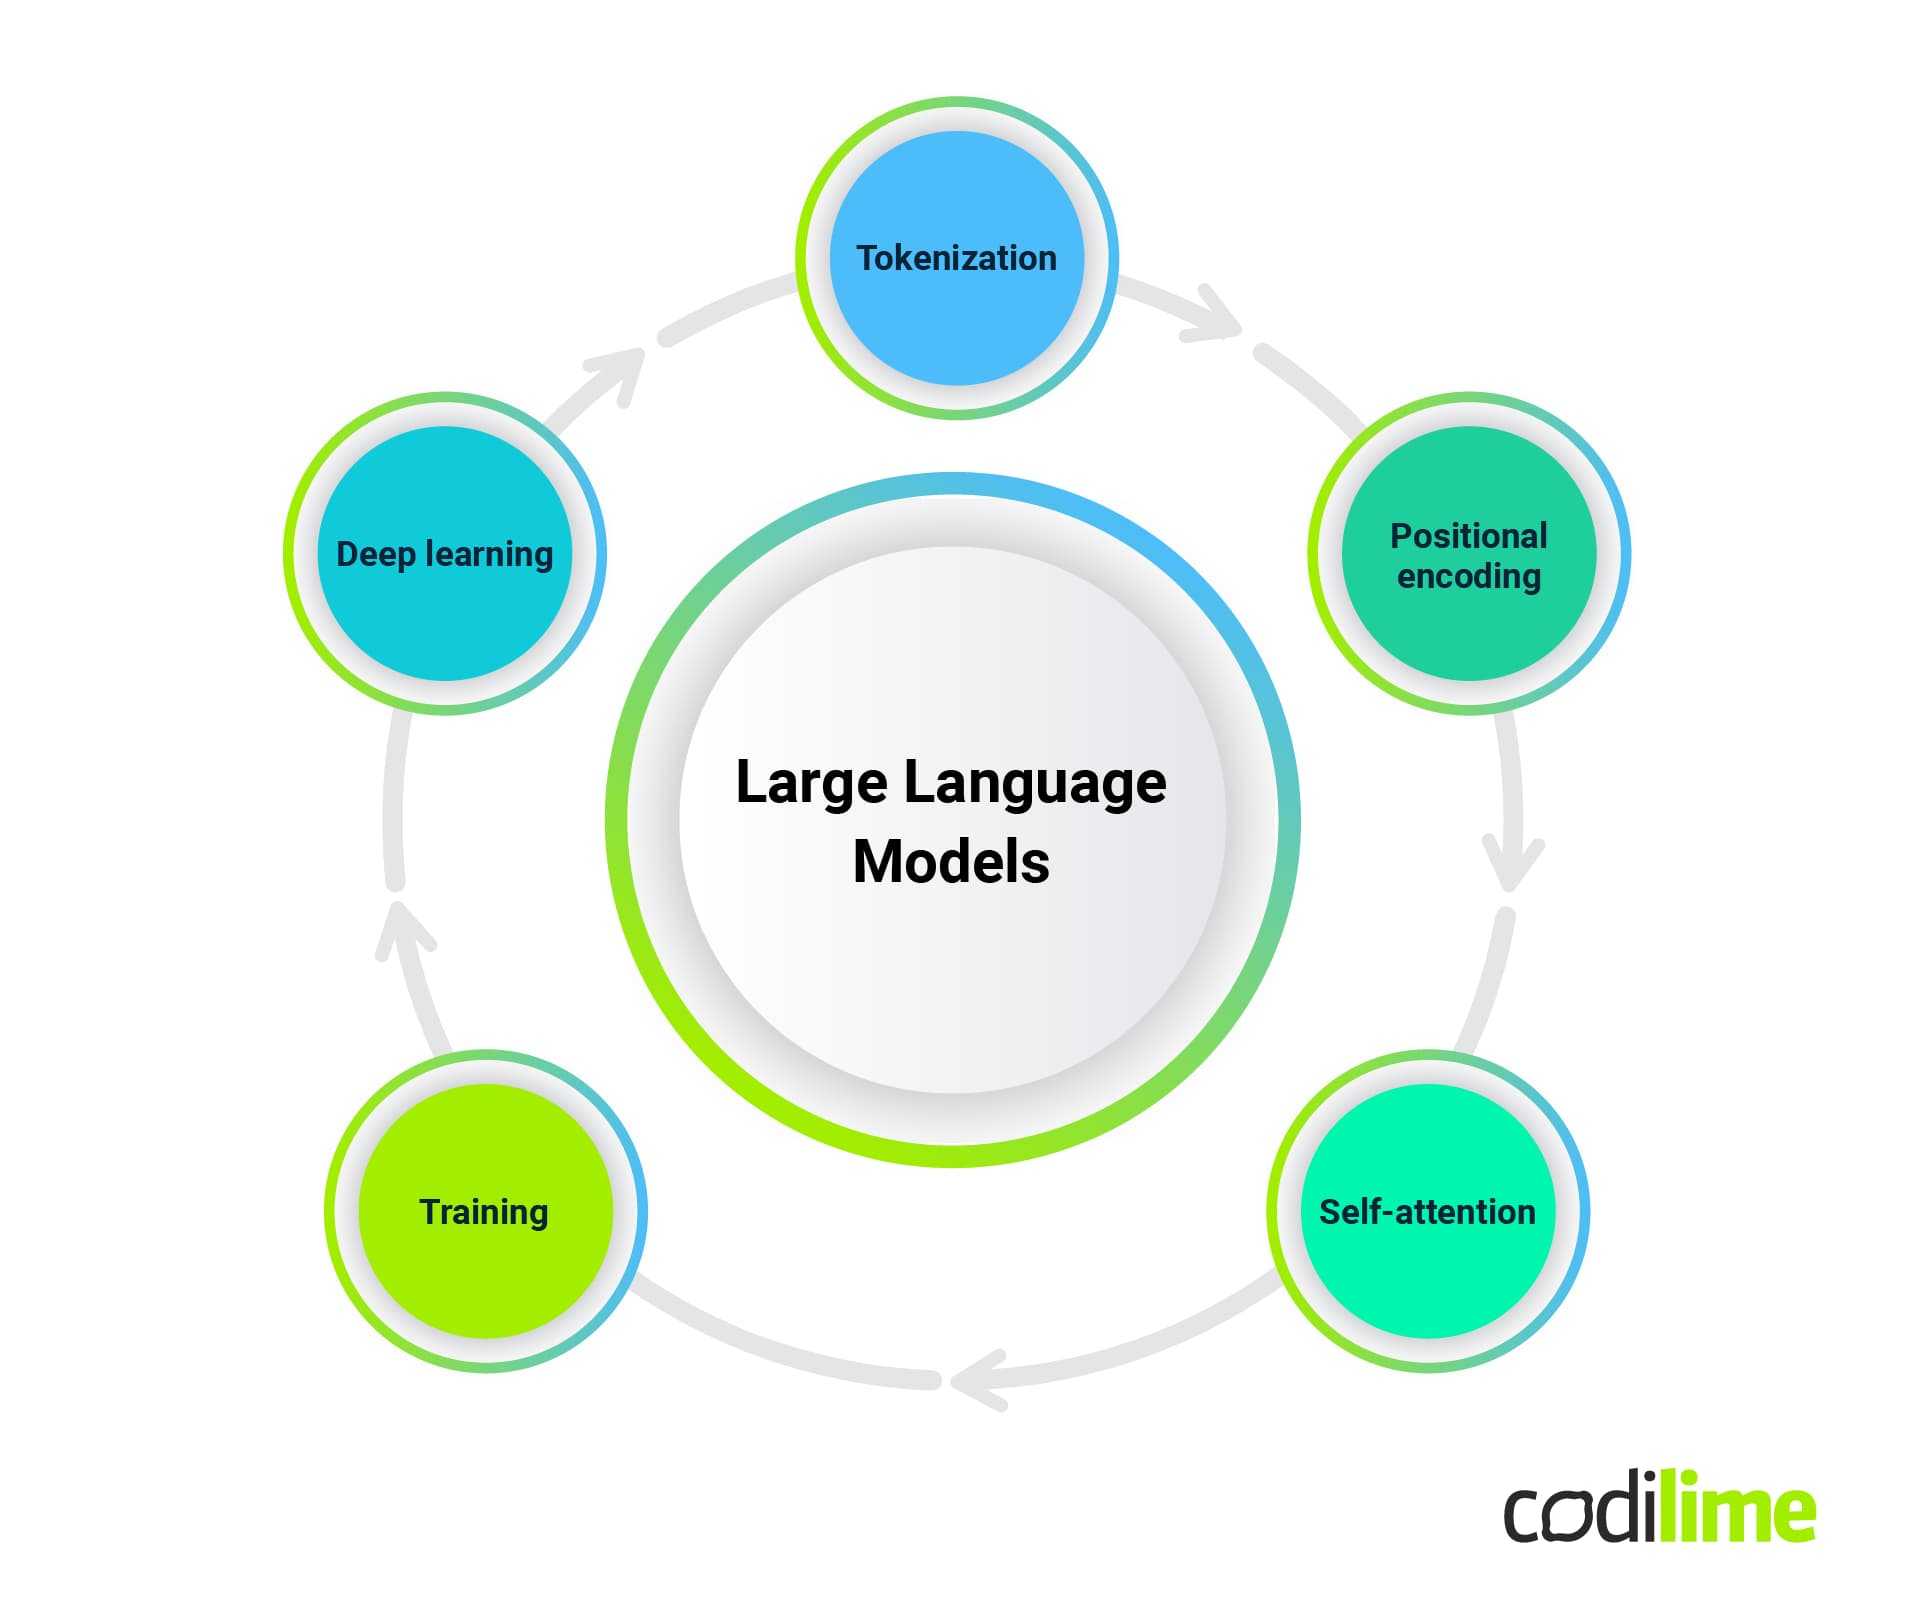 How do large language models work?